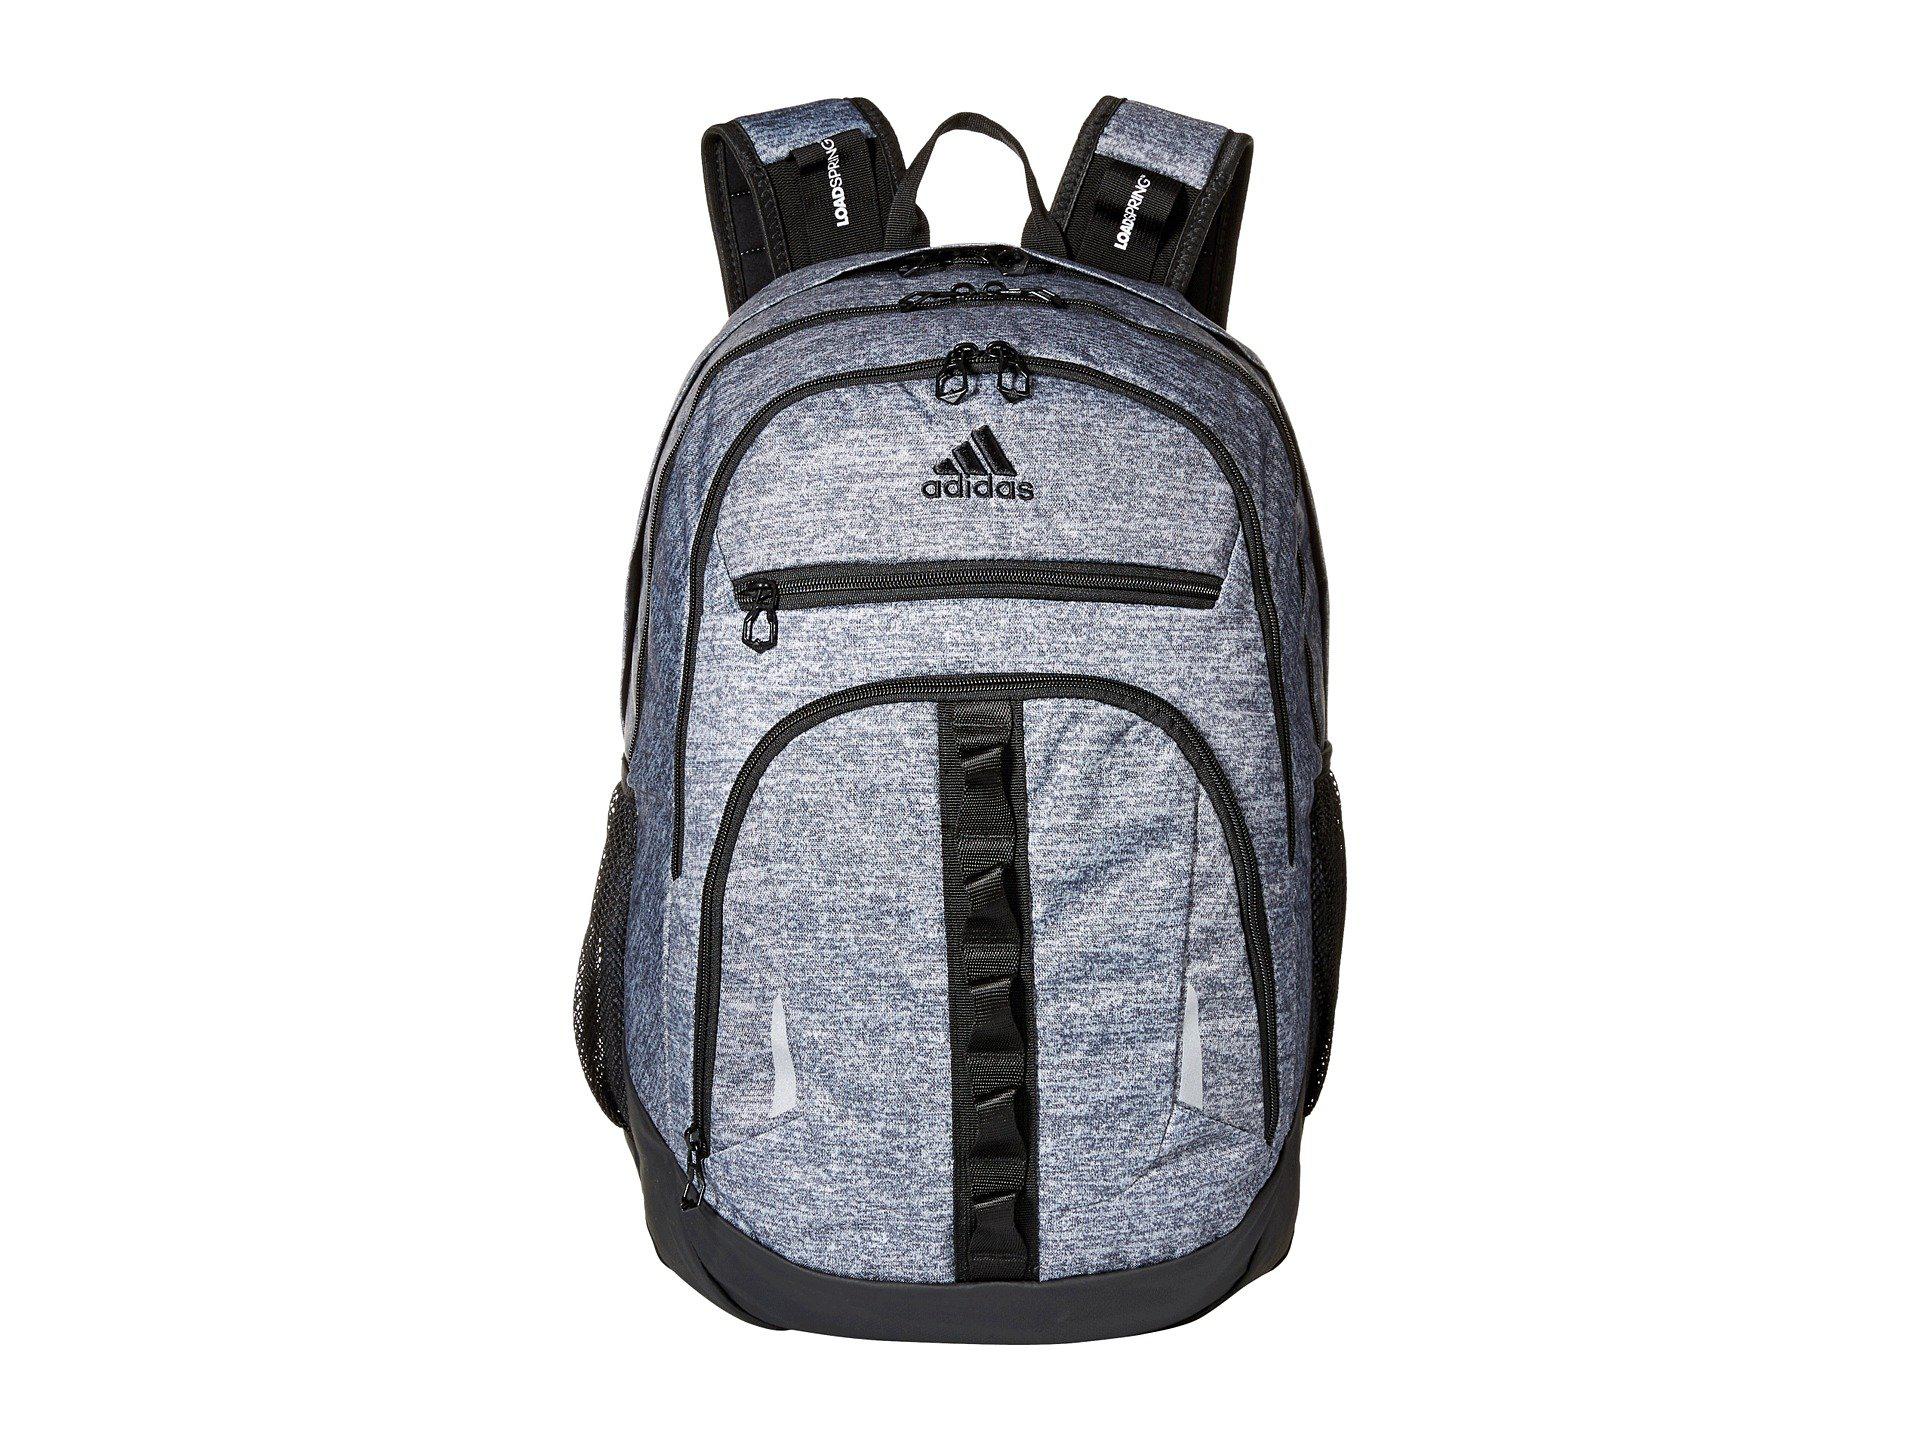 adidas prime iv backpack lifetime warranty